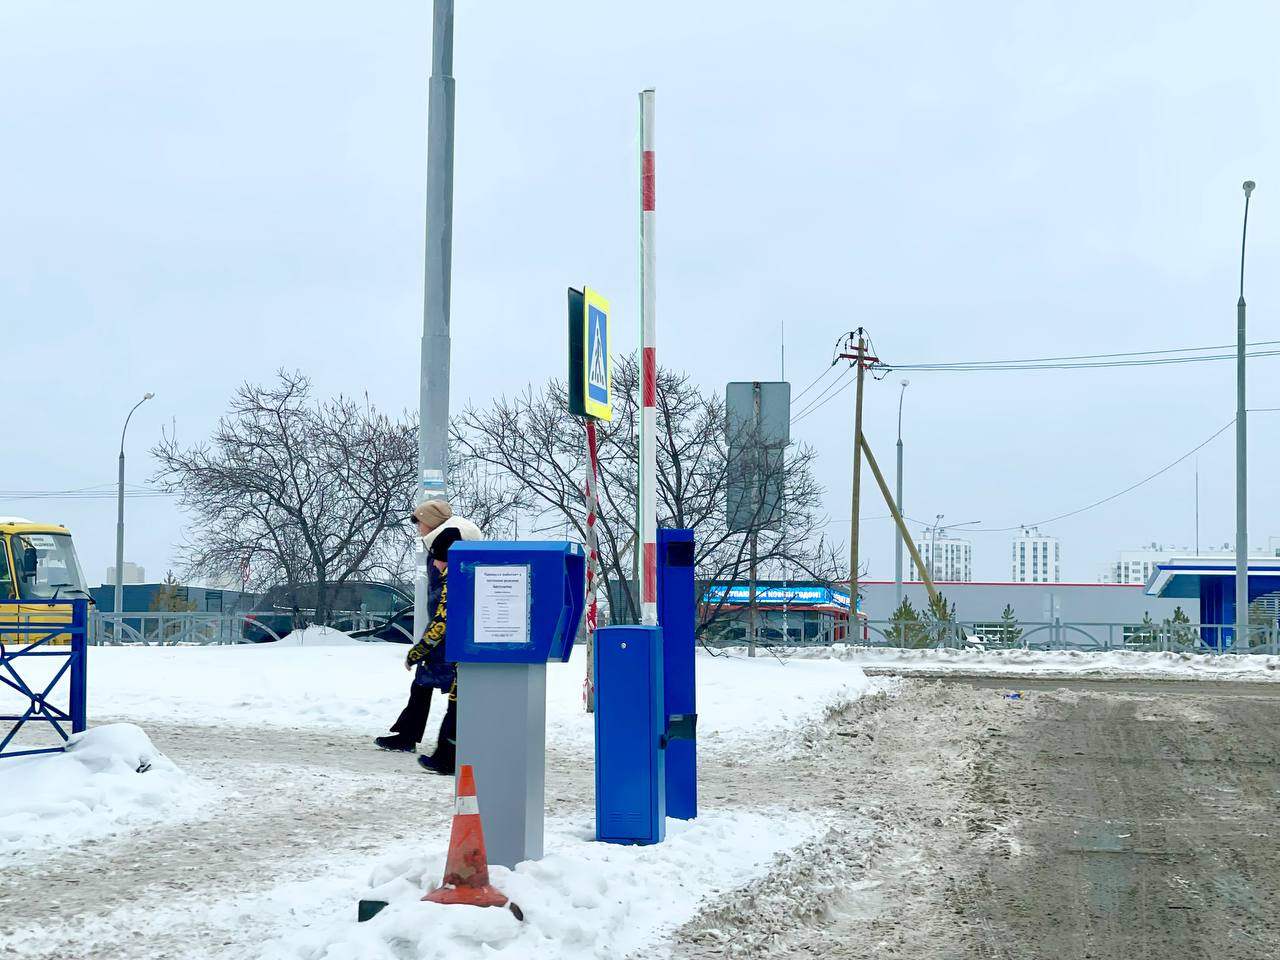 Халява закончилась! В Екатеринбурге крупная сеть магазинов сделала парковку платной